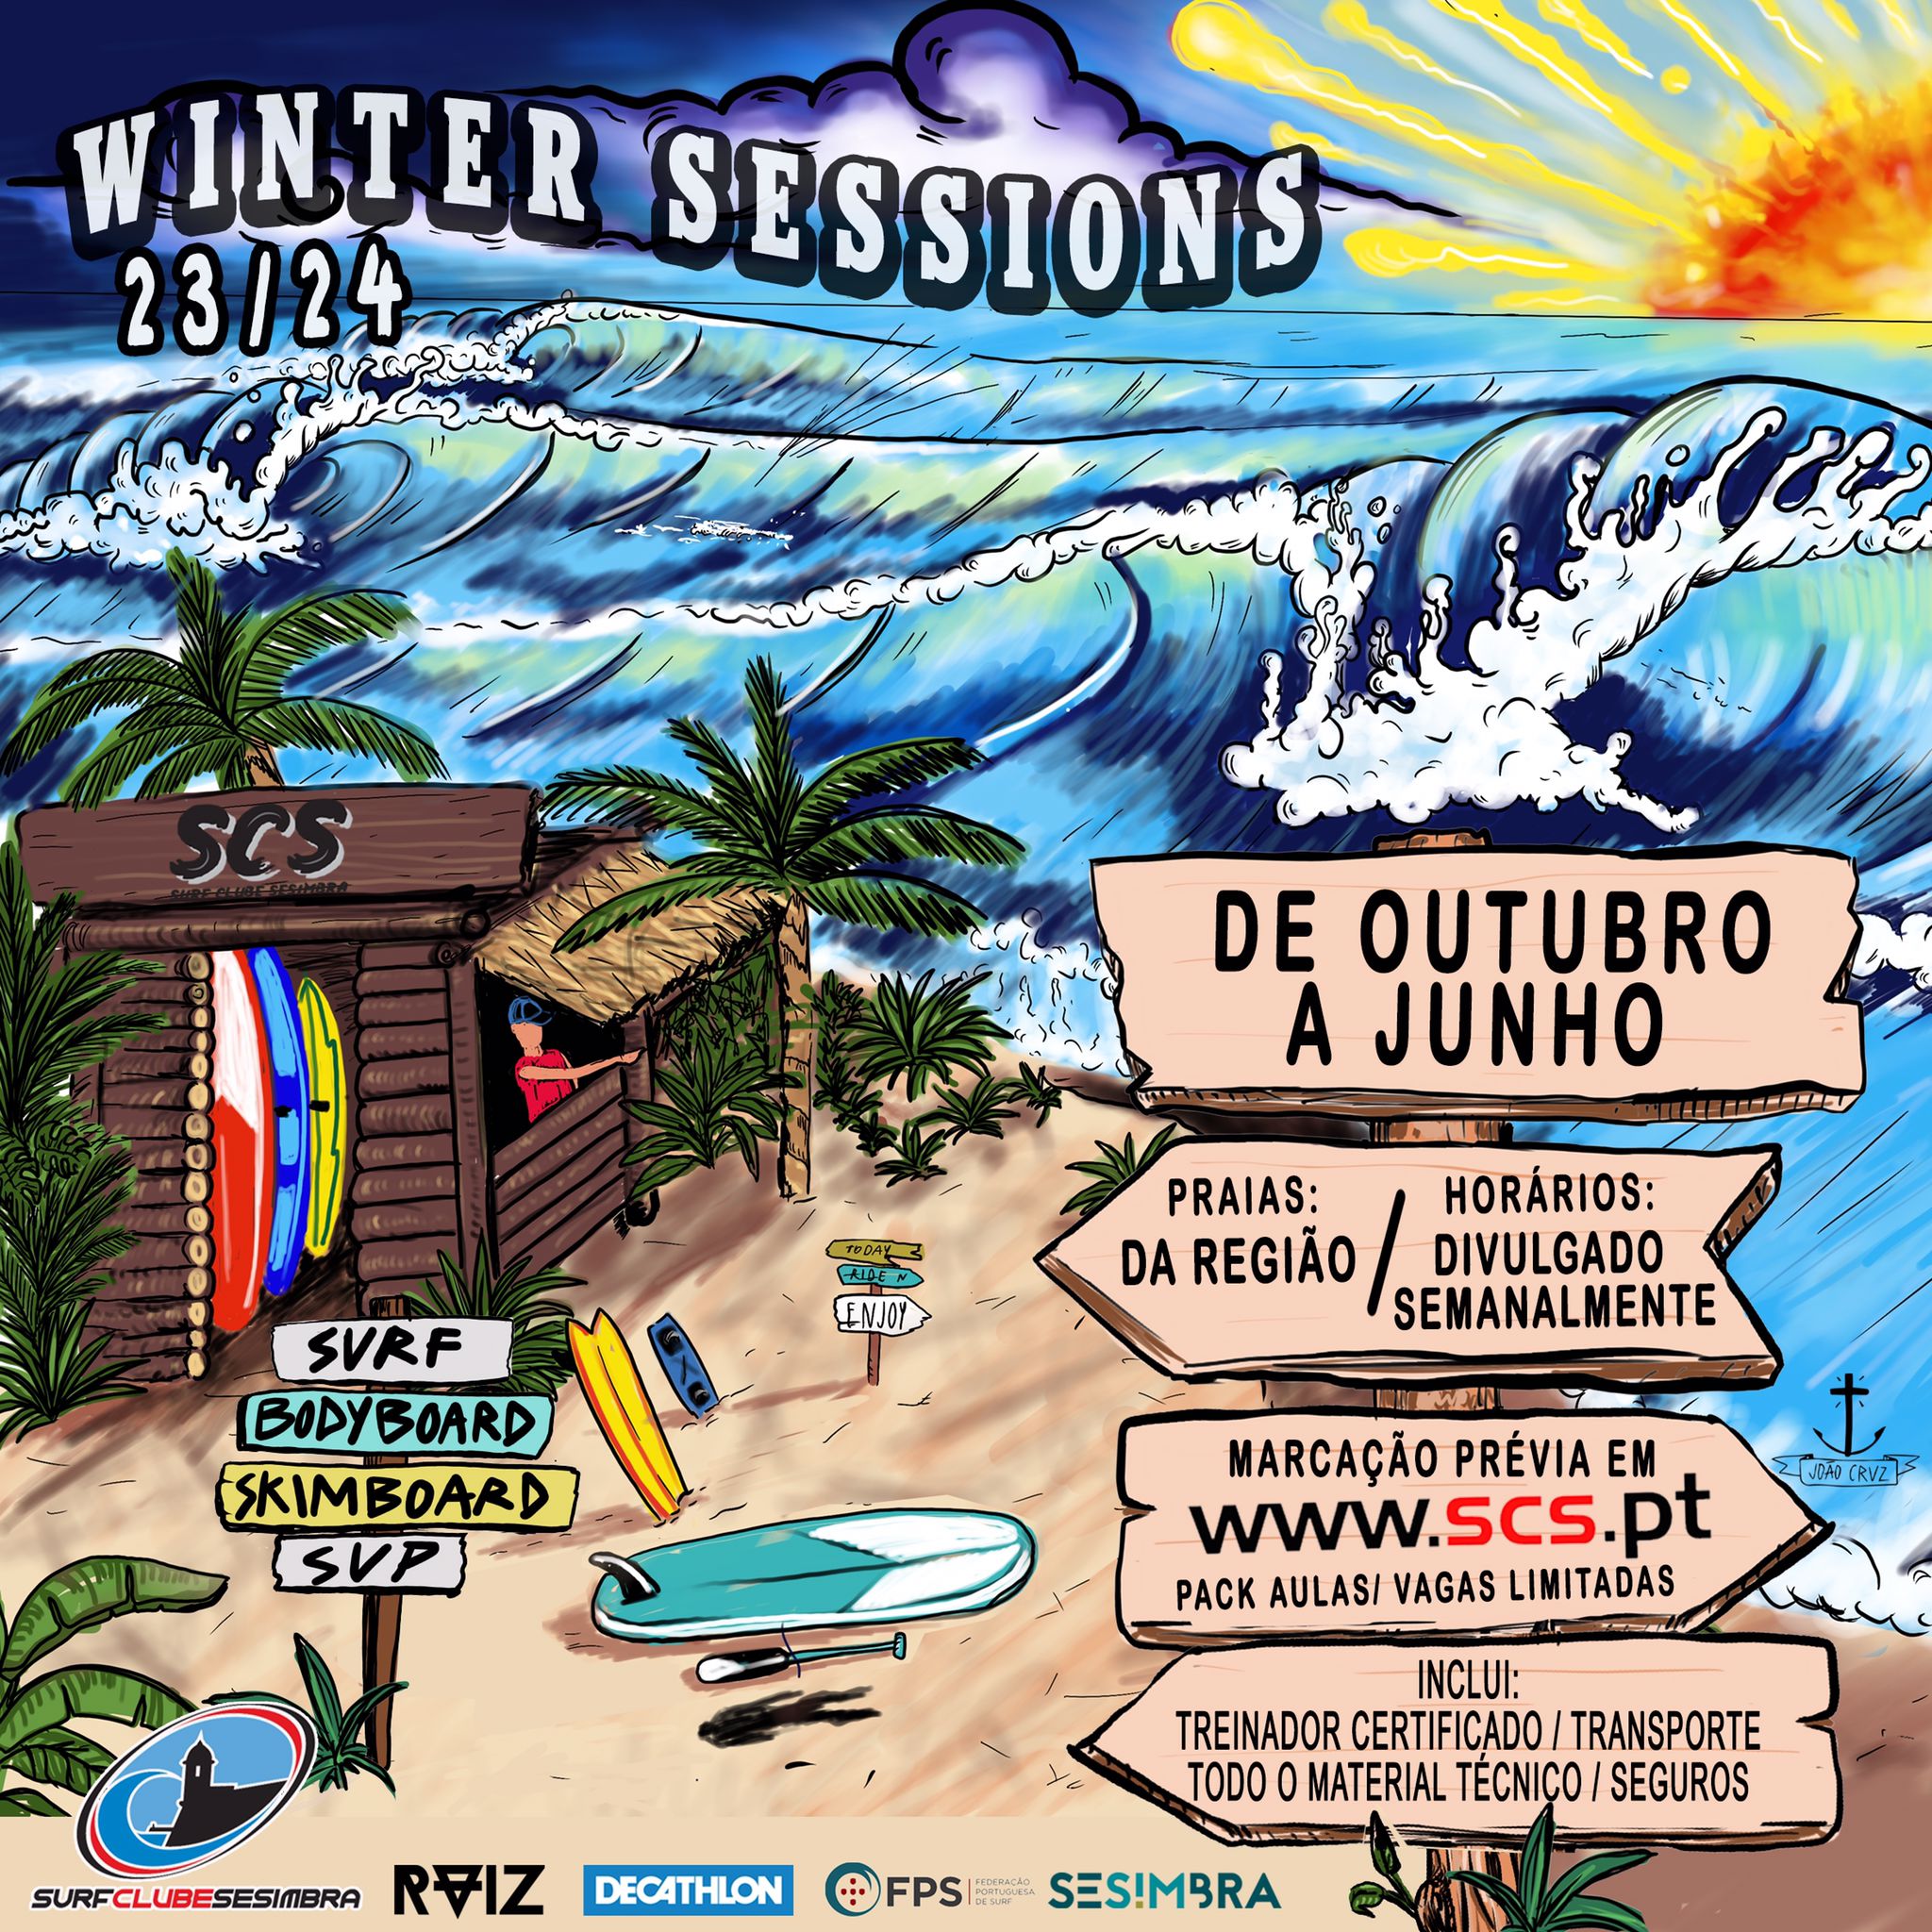 O Surf Clube de Sesimbra criou um programa de Inverno para jovens "surfistas"